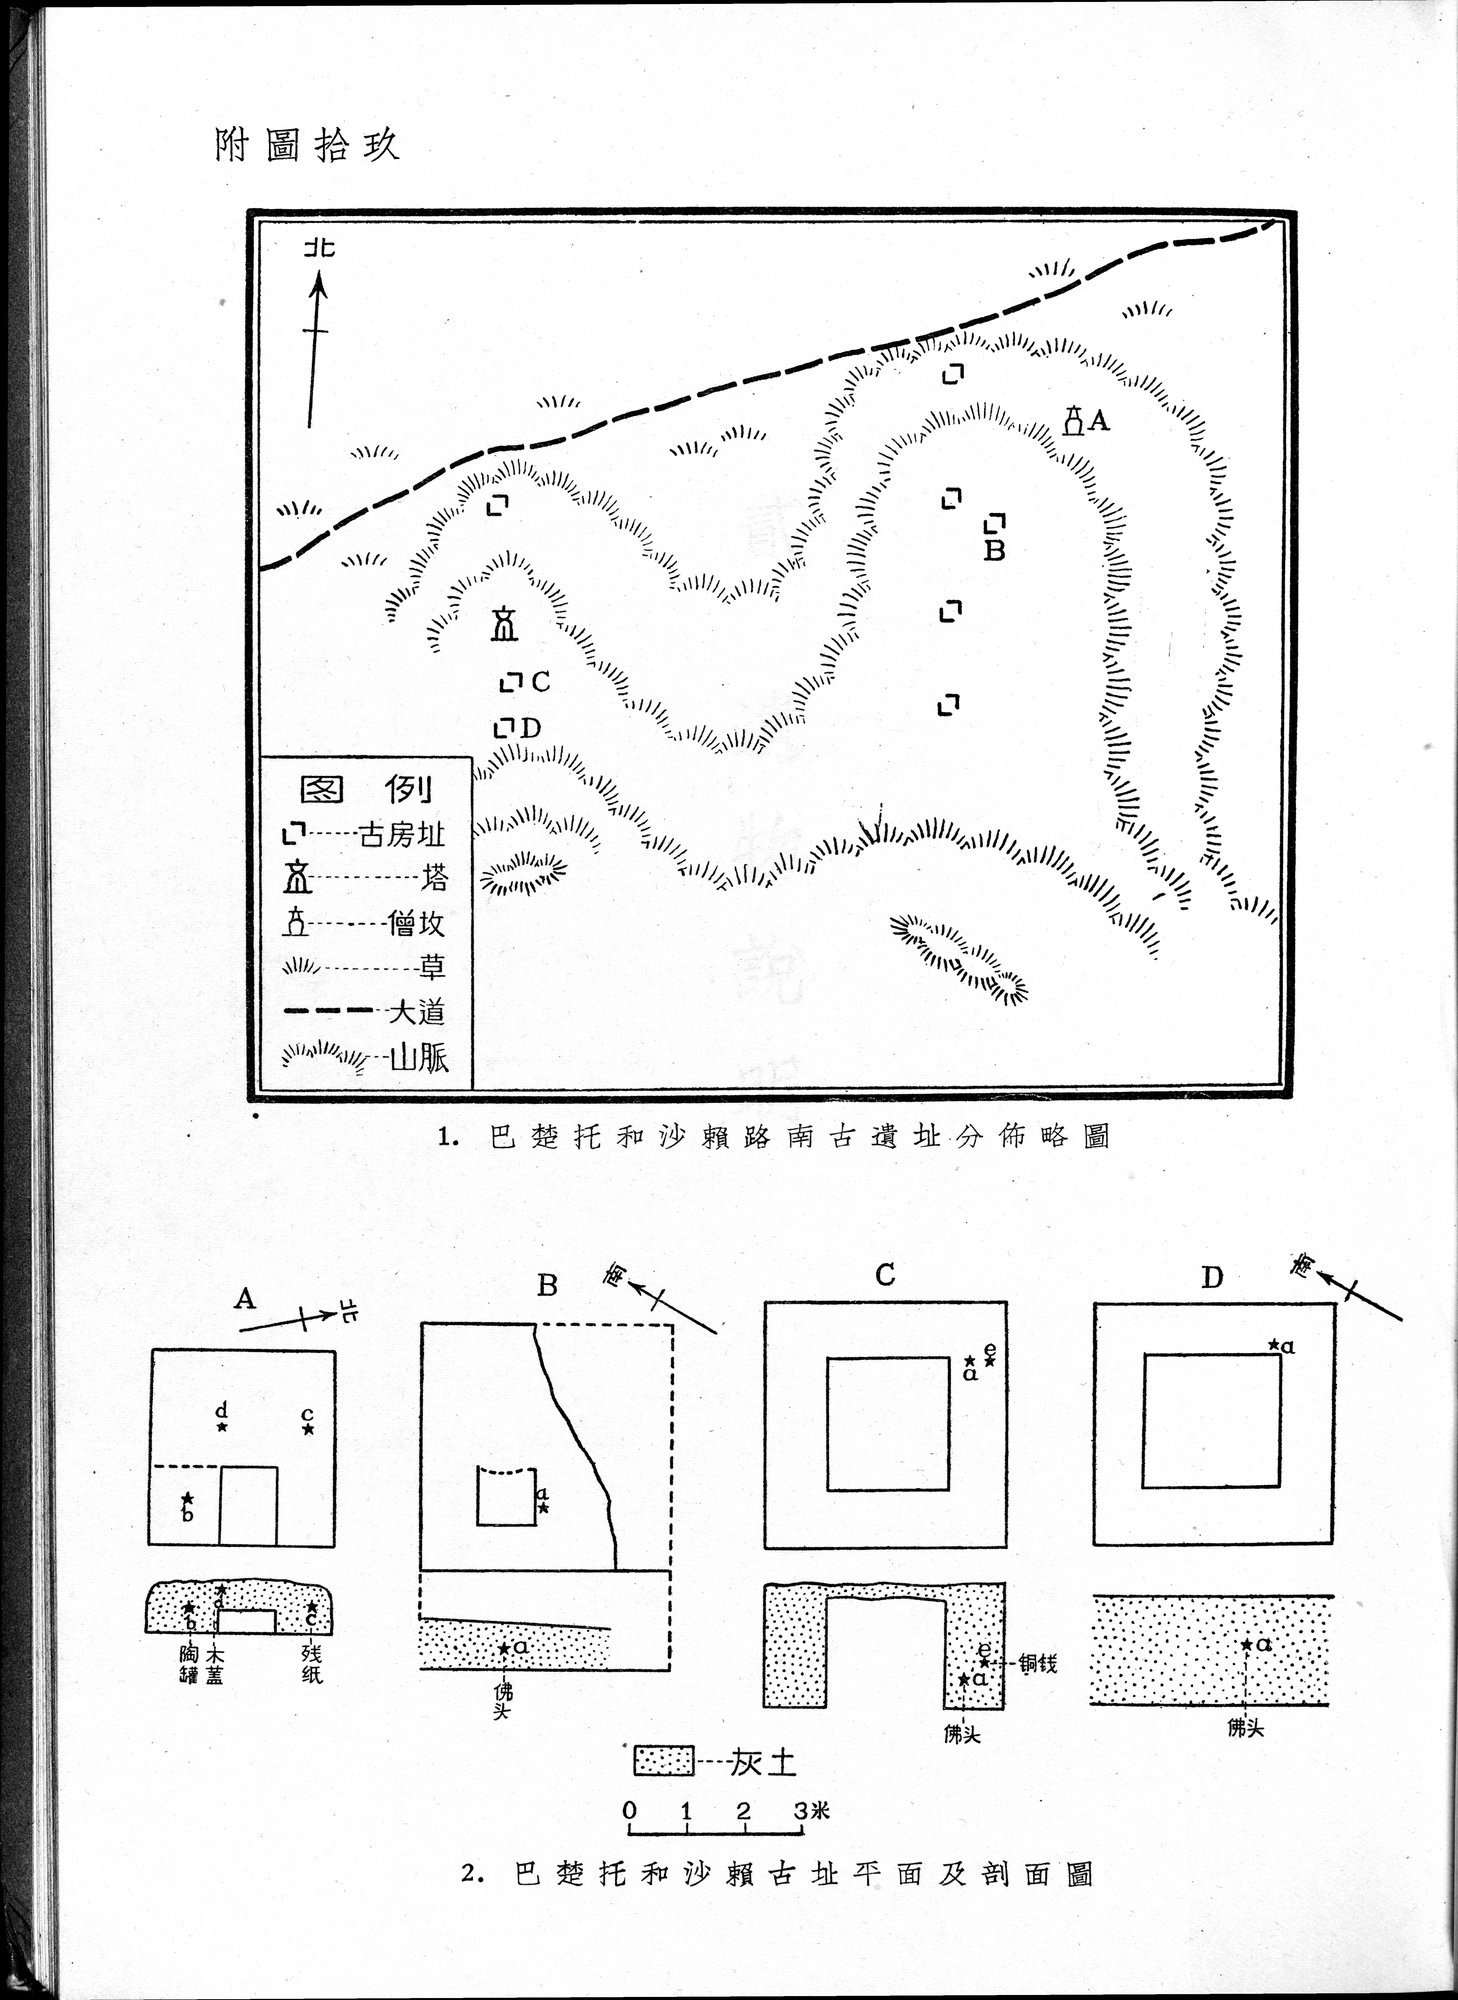 塔里木盆地考古記 : vol.1 / Page 125 (Grayscale High Resolution Image)